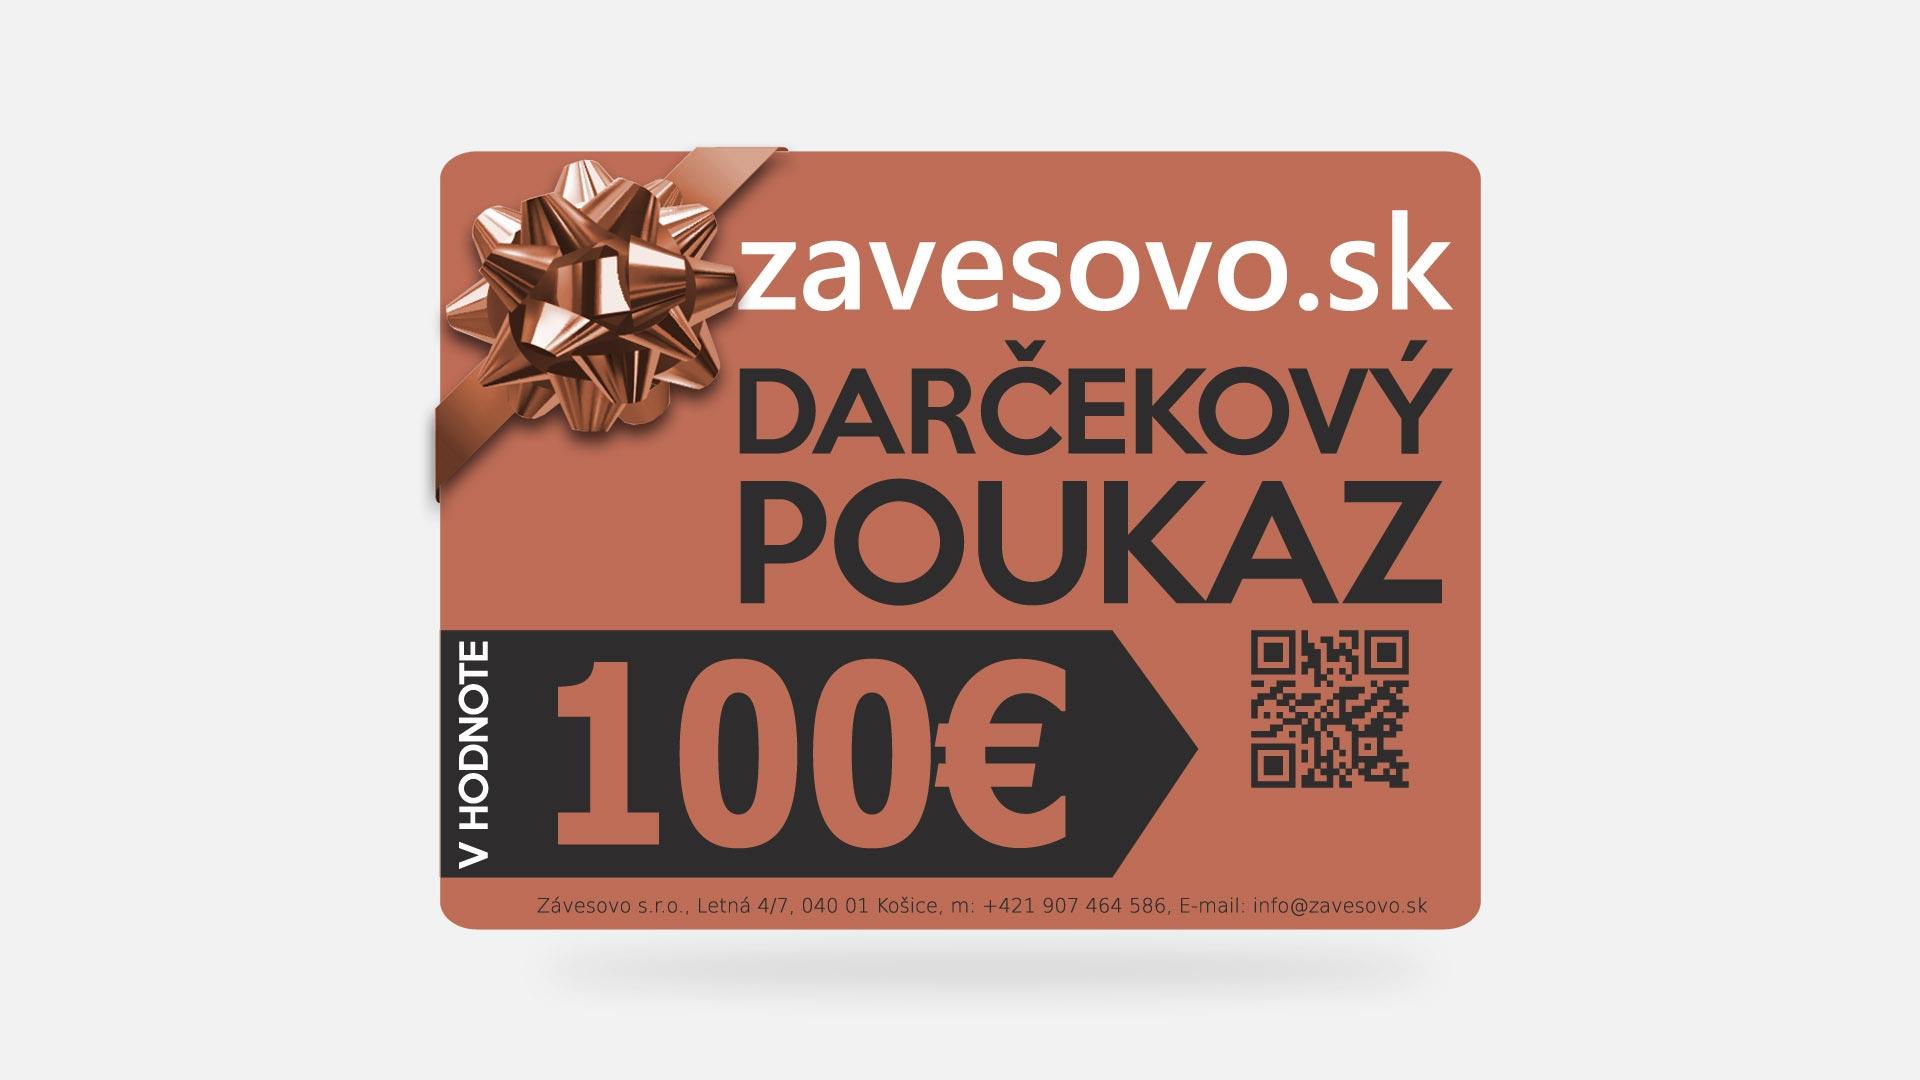 Darujte poukaz v hodnote 100€ na zavesovo.sk